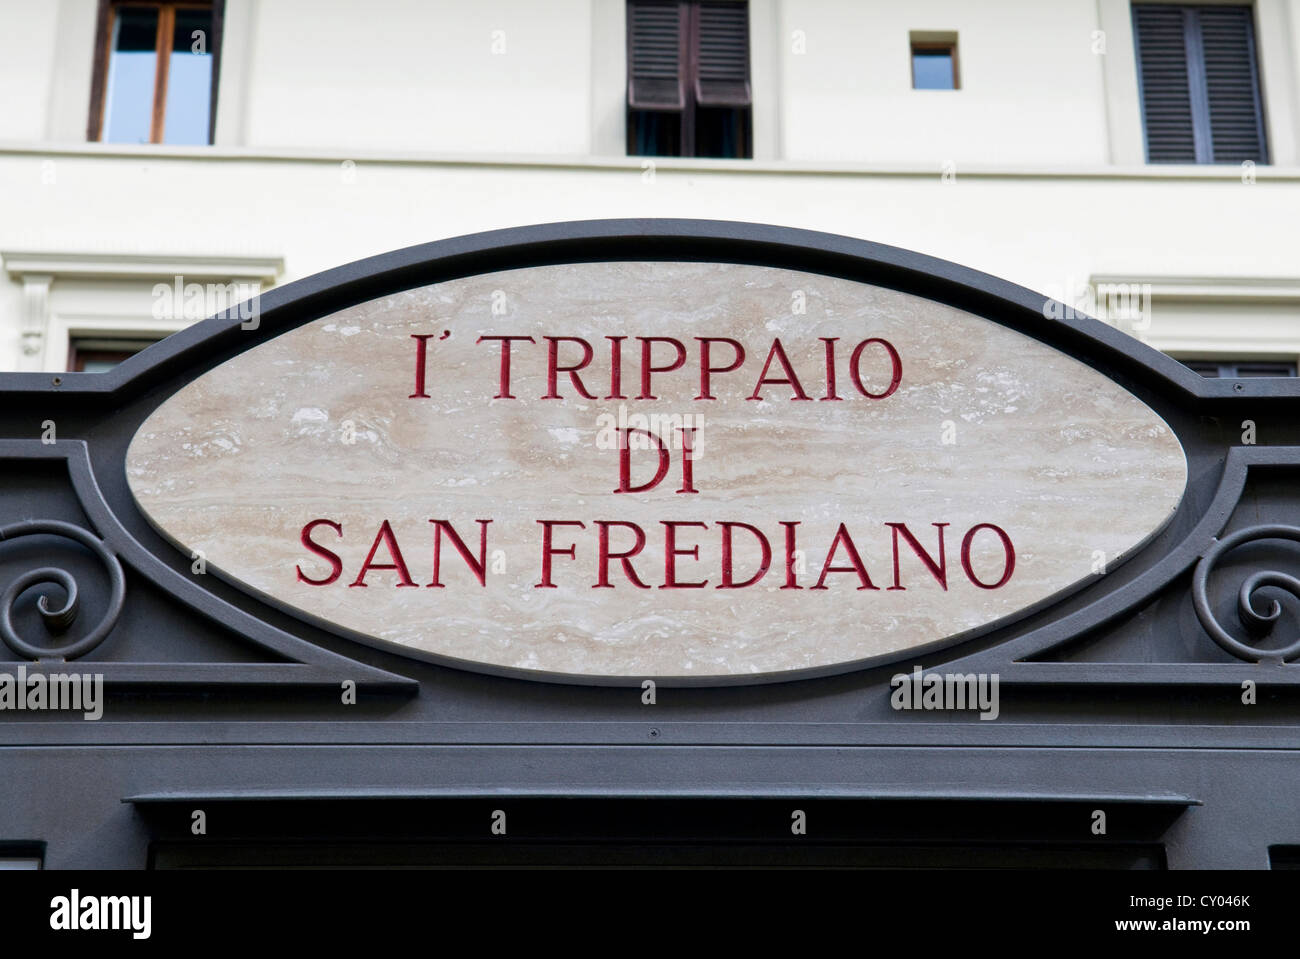 Signe de tripes de vendeur, Piazza dei Nerli, Firenze (Florence), Toscane, Italie, Europe Banque D'Images